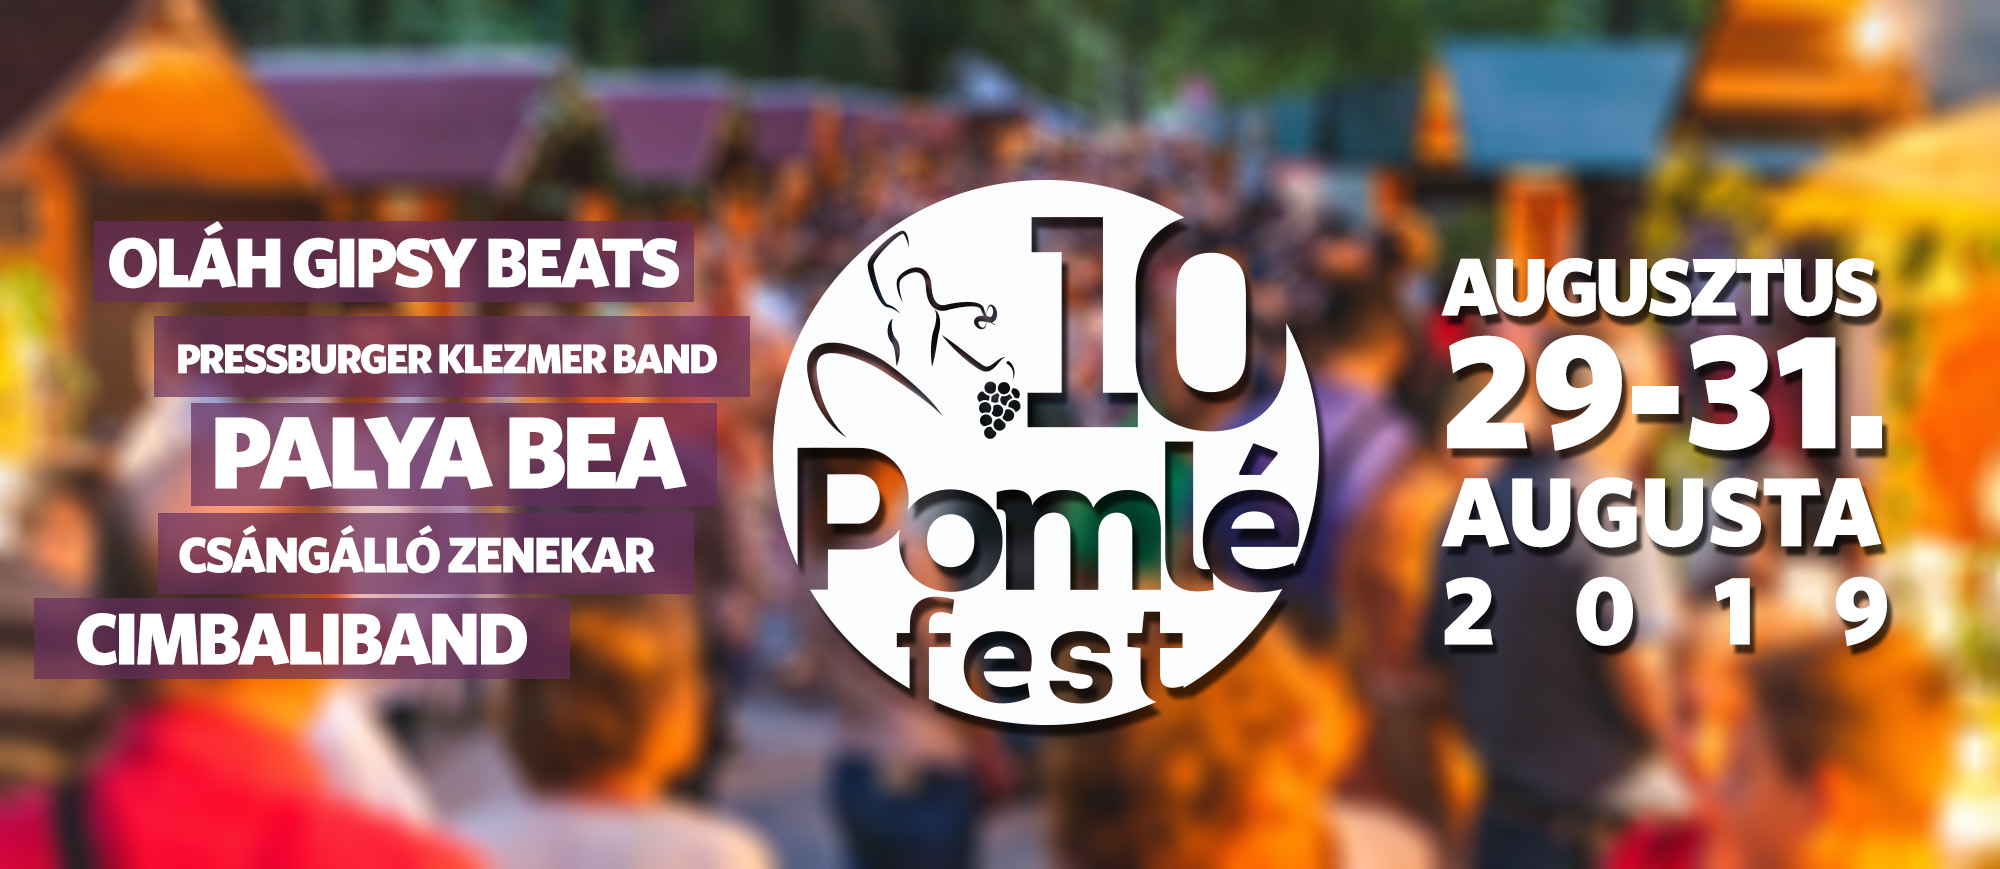 Festival Poml amorn 2019 - 10. ronk